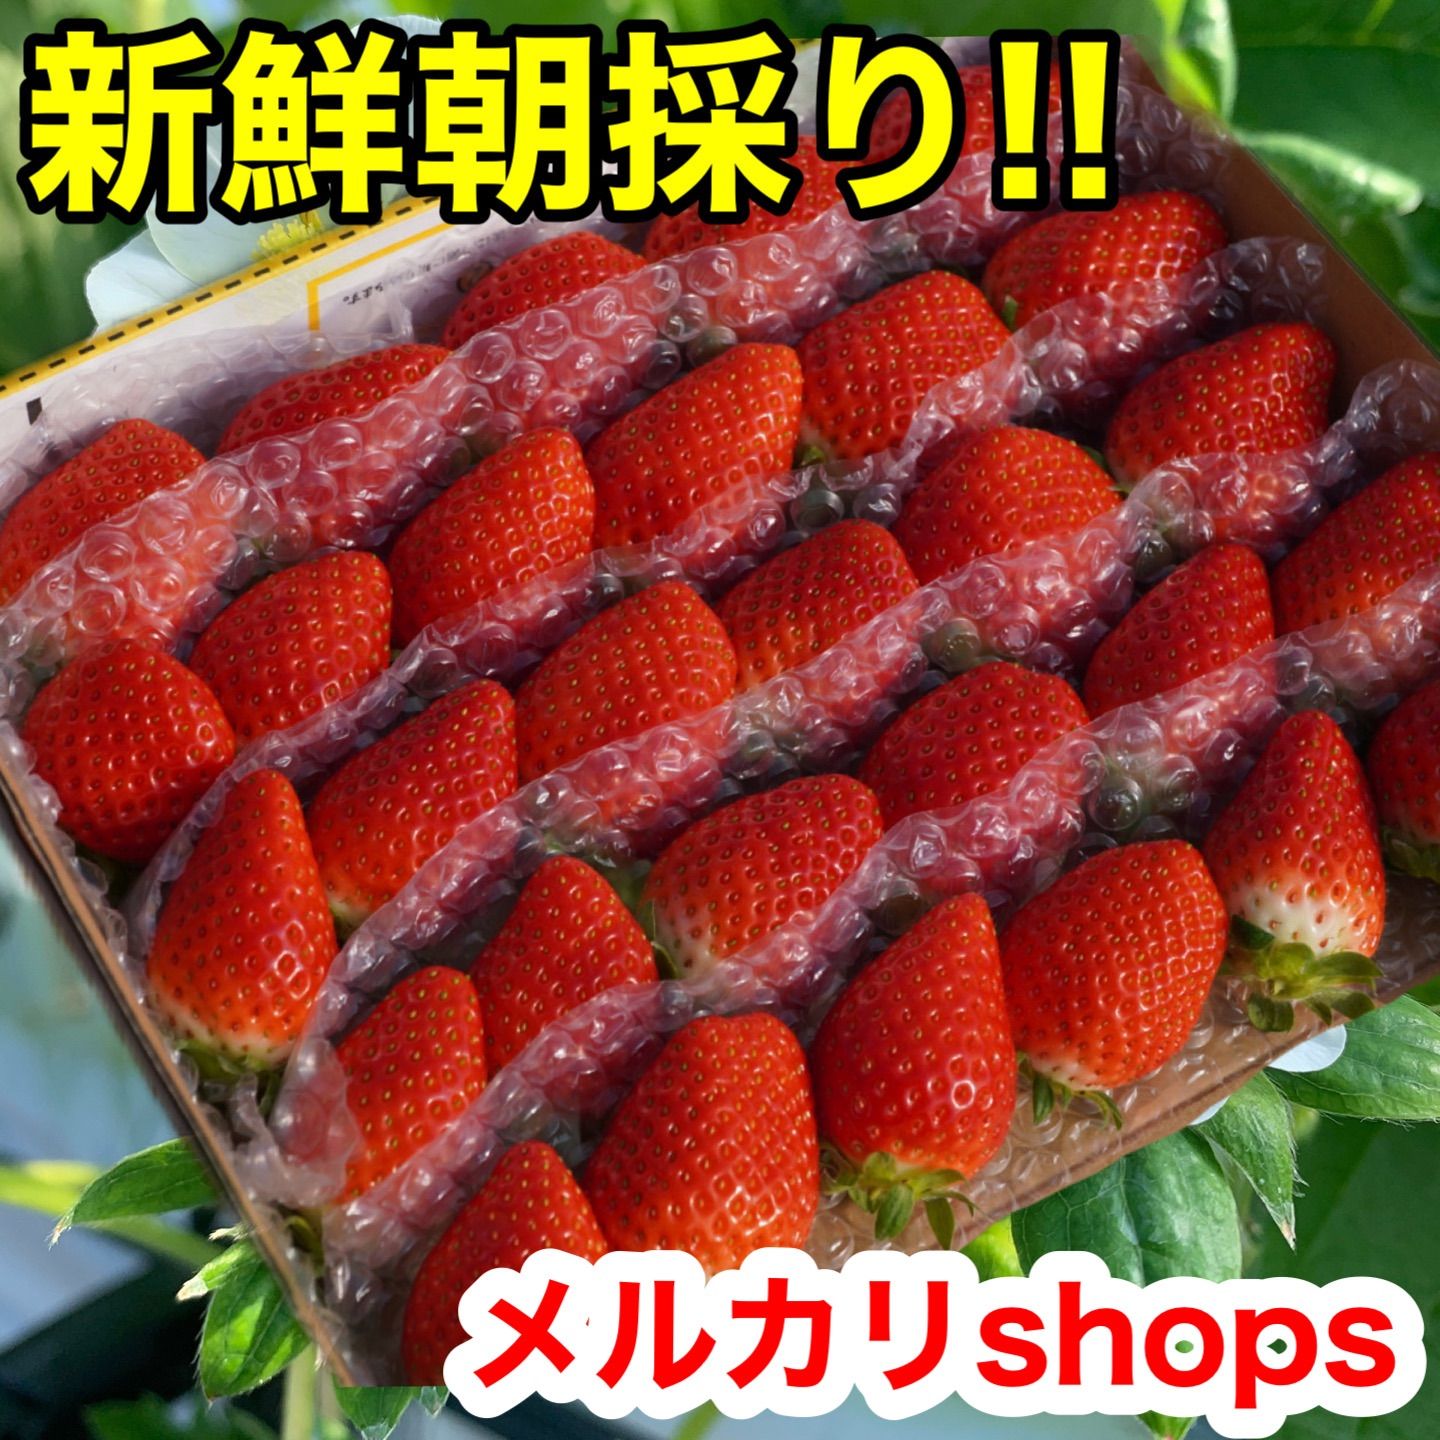 「新鮮朝採り」クール便‼️2箱 かんちゃん農園 甘いいちご